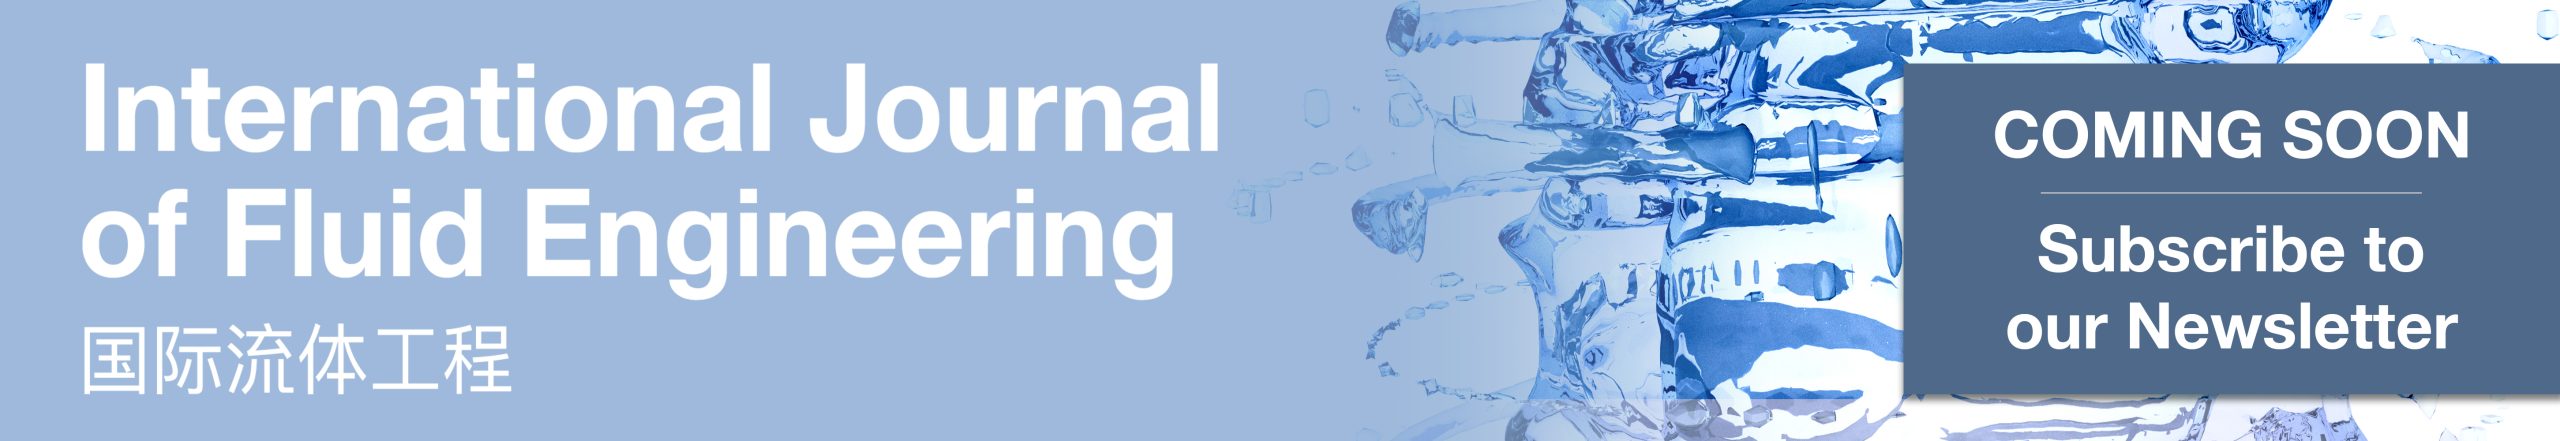 International Journal of Fluid Engineering -  Coming Soon